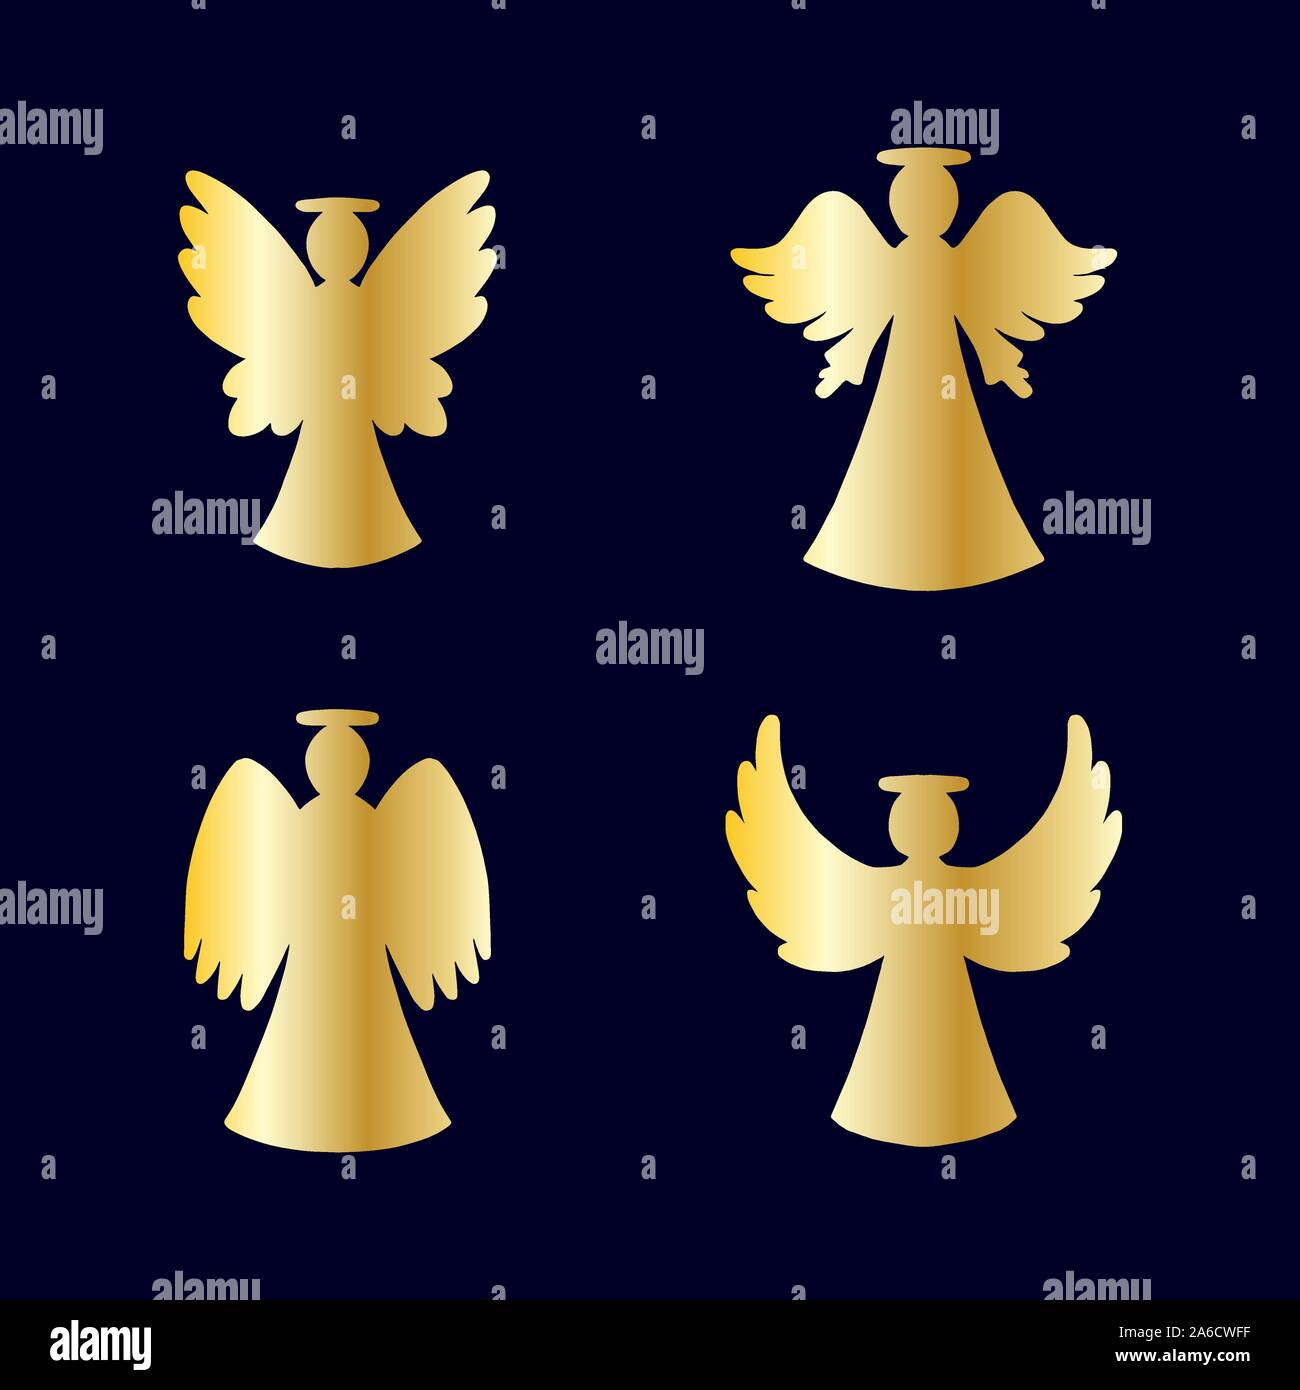 Vektor einrichten von vier goldenen Engel Silhouette auf dunkelblauem Hintergrund. Silhouette für das Neue Jahr, Weihnachten Stock Vektor